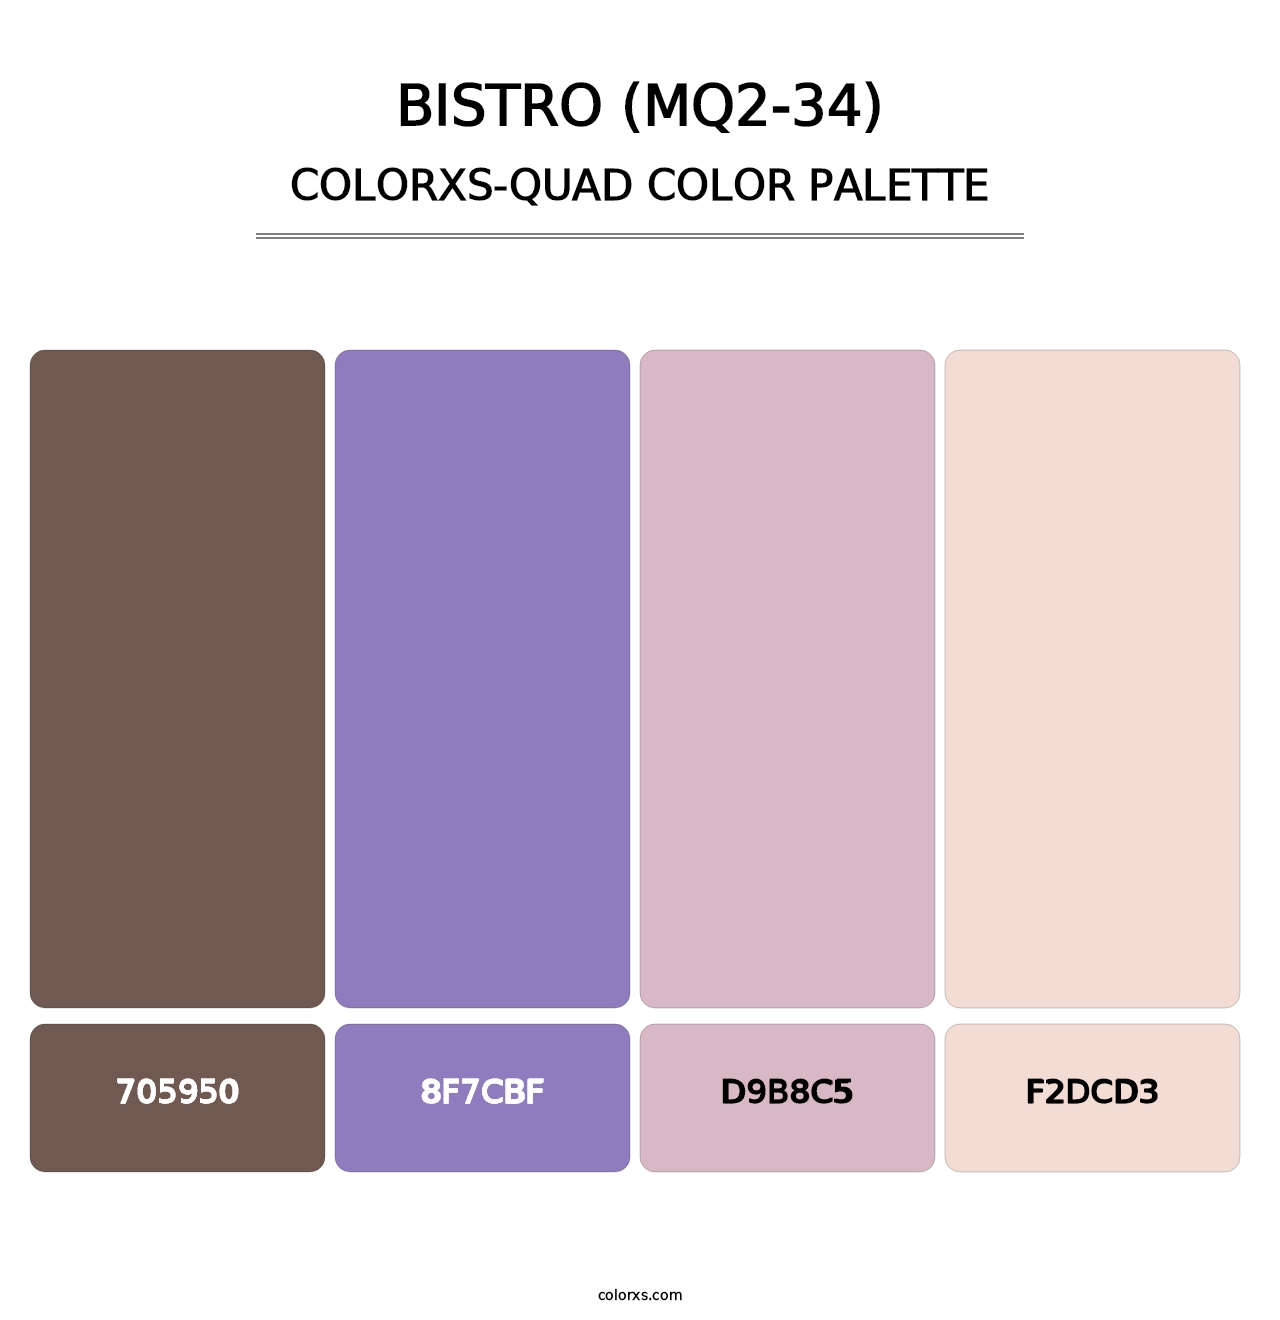 Bistro (MQ2-34) - Colorxs Quad Palette